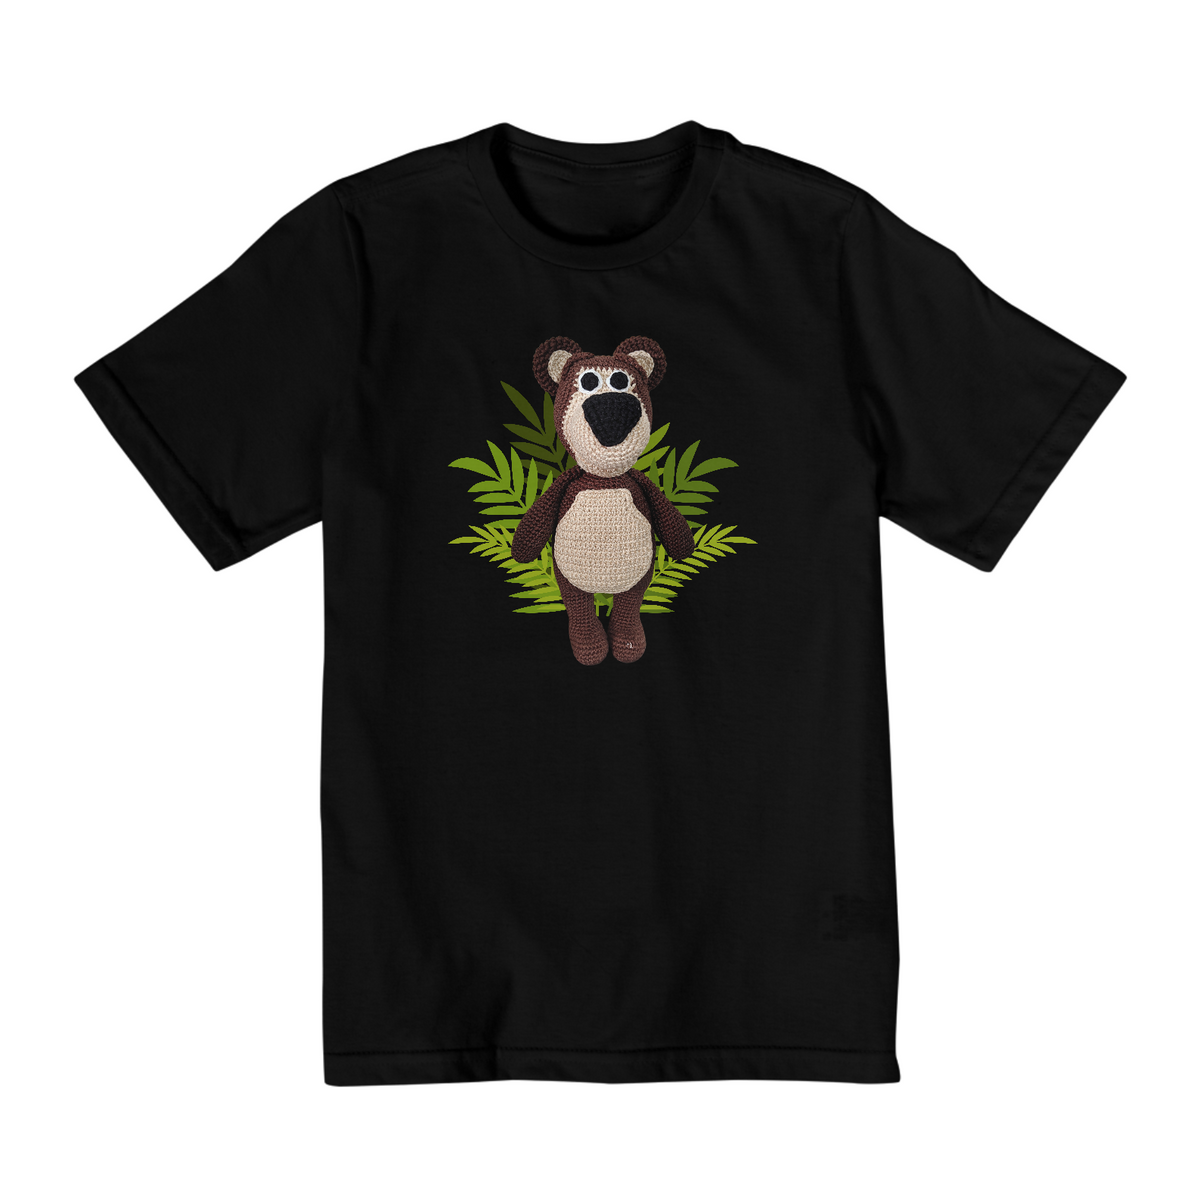 Nome do produto: Camiseta Amigurumi Inspirada no Urso da Masha